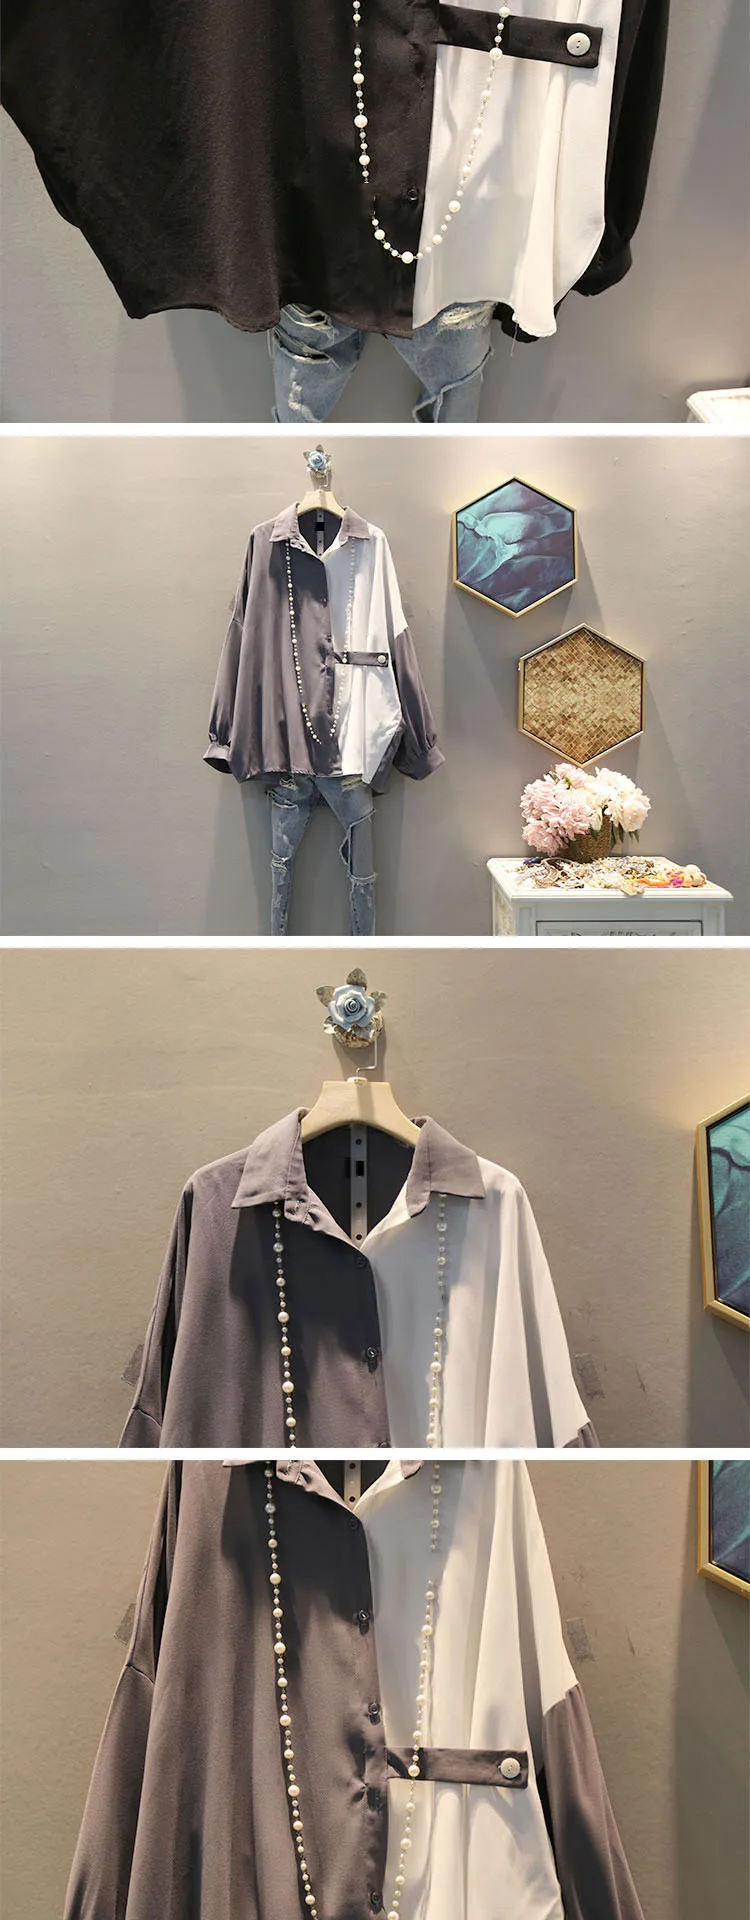 Tvvovwin хит цвета Элегантная блузка Женская корейская мода новинка 2019 осень отложной воротник пэчворк маленькая свежая новая рубашка F635